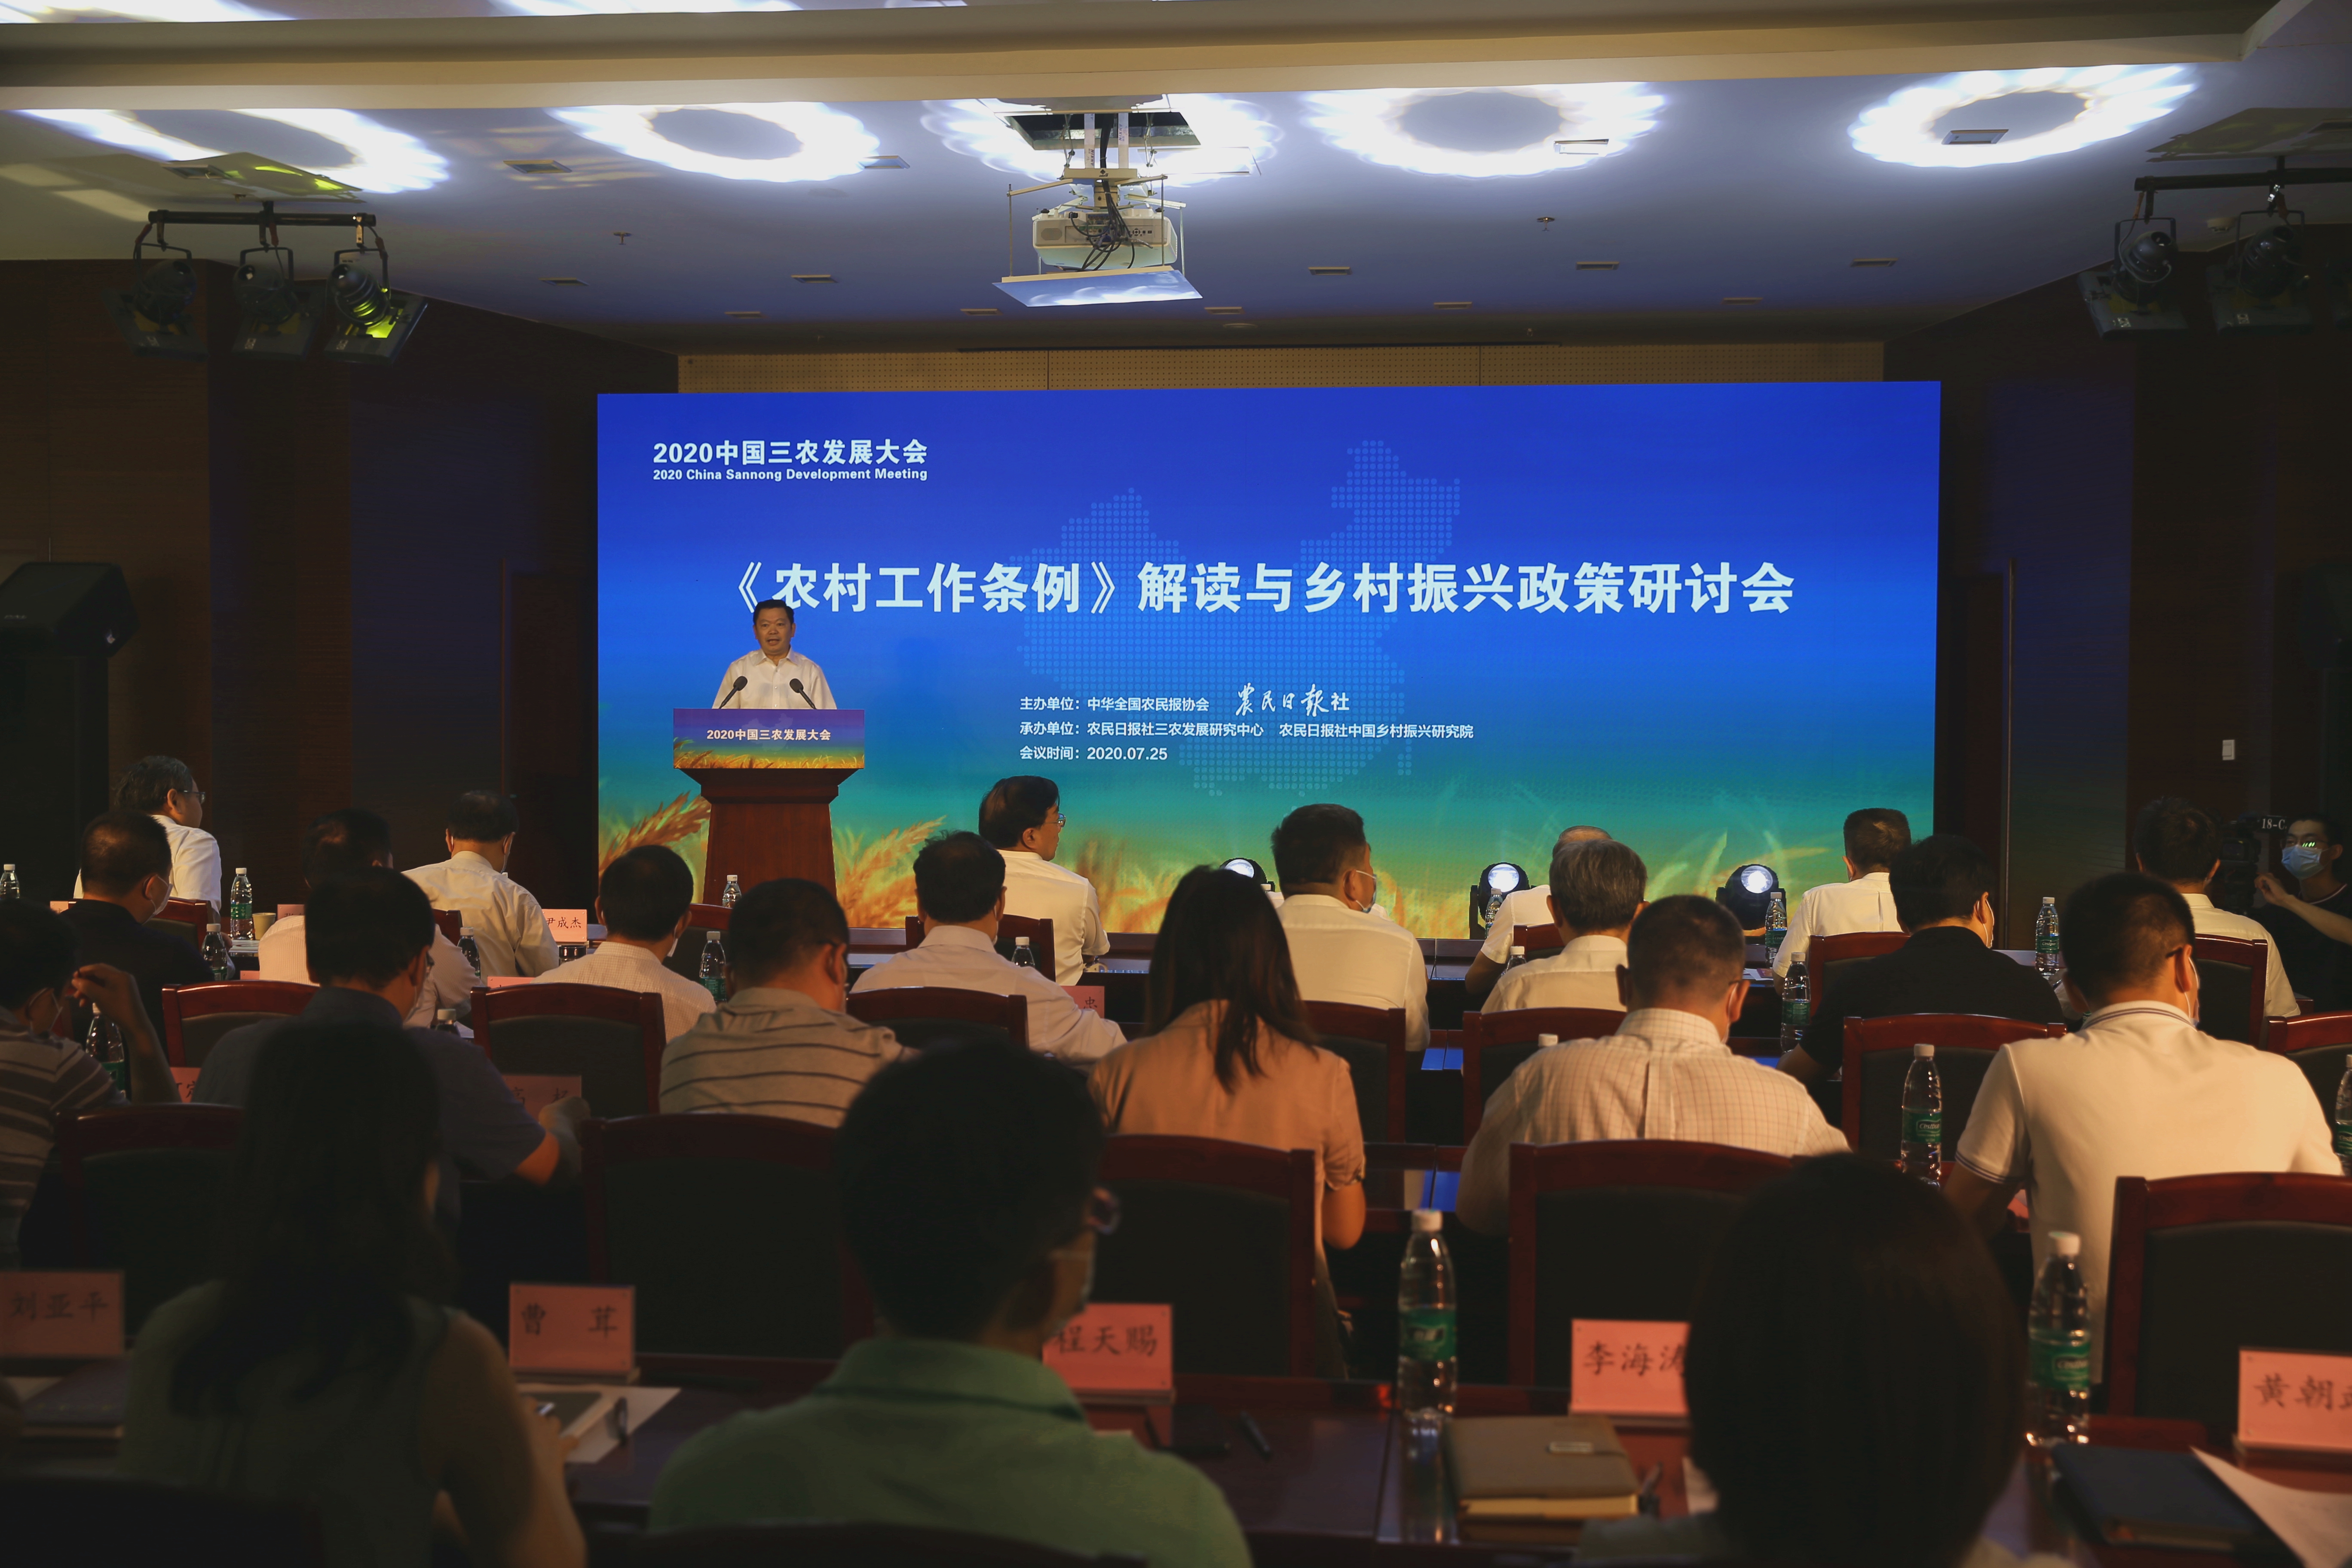 2020中国三农发展大会会议现场